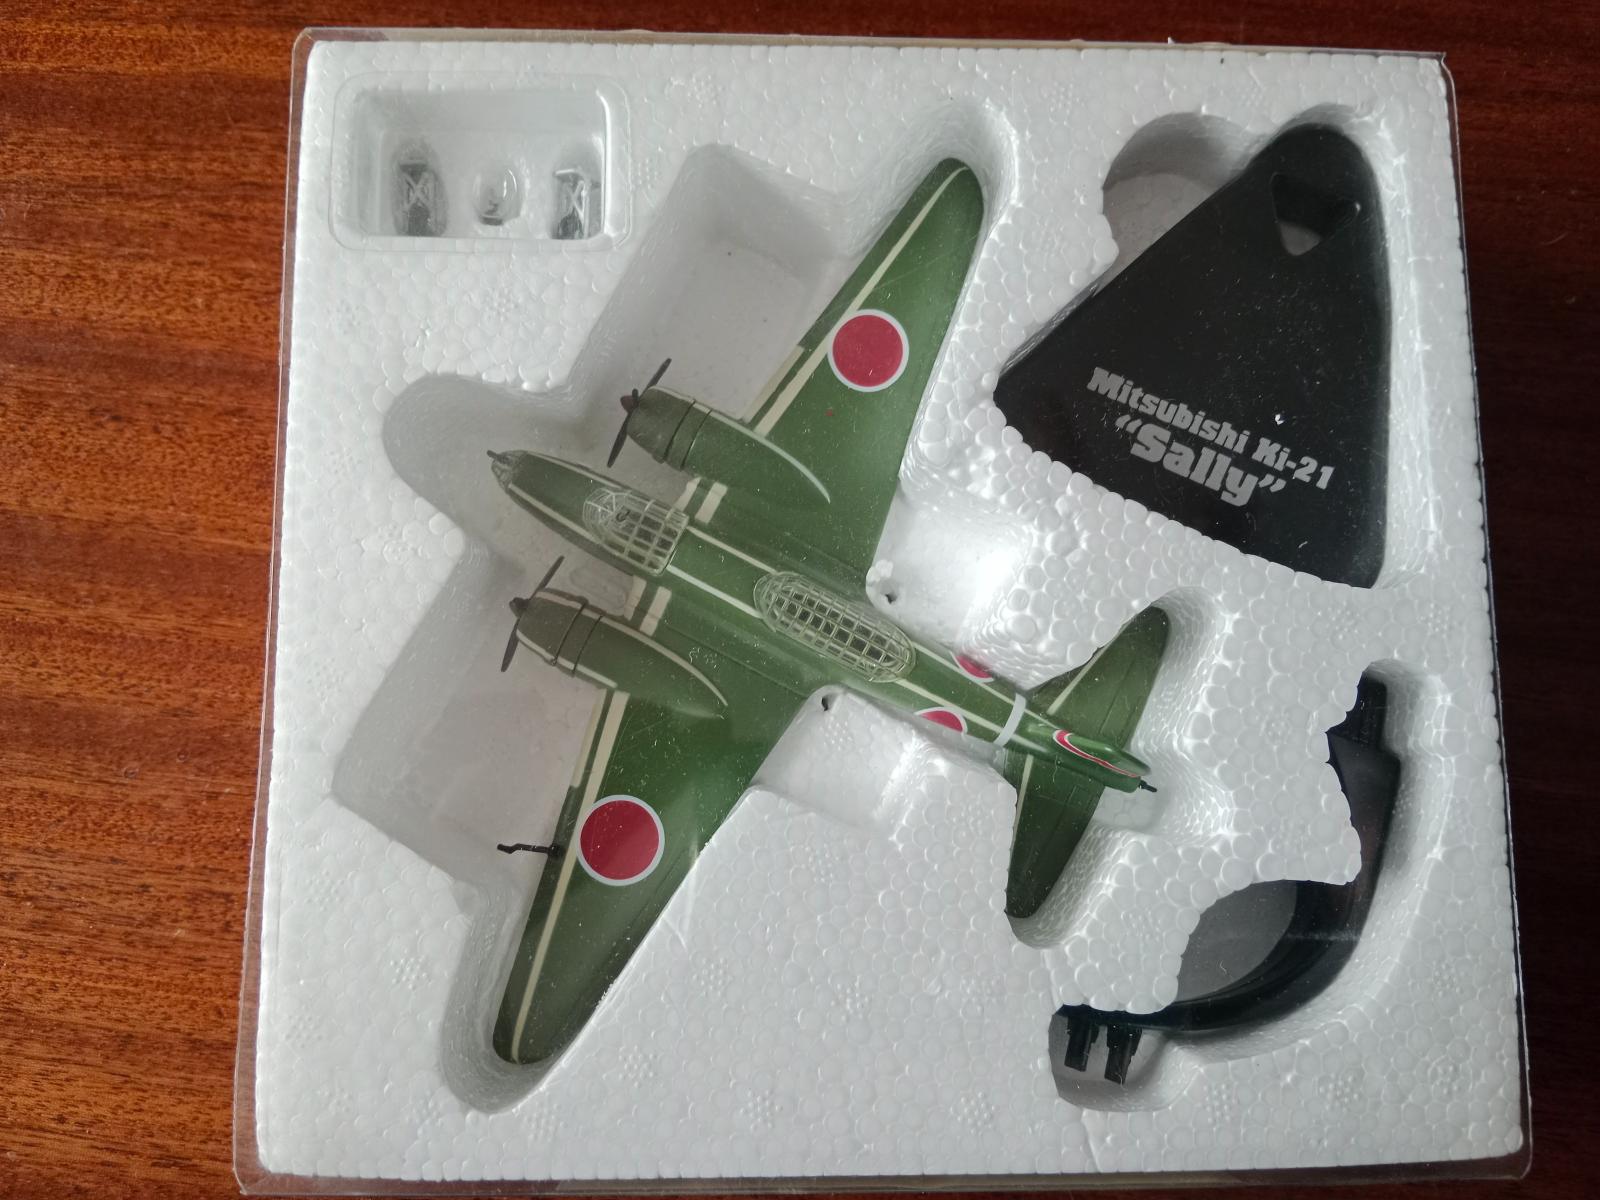 Model lietadla Mitsubishi Ki-21 "Sally" - Modely lietadiel